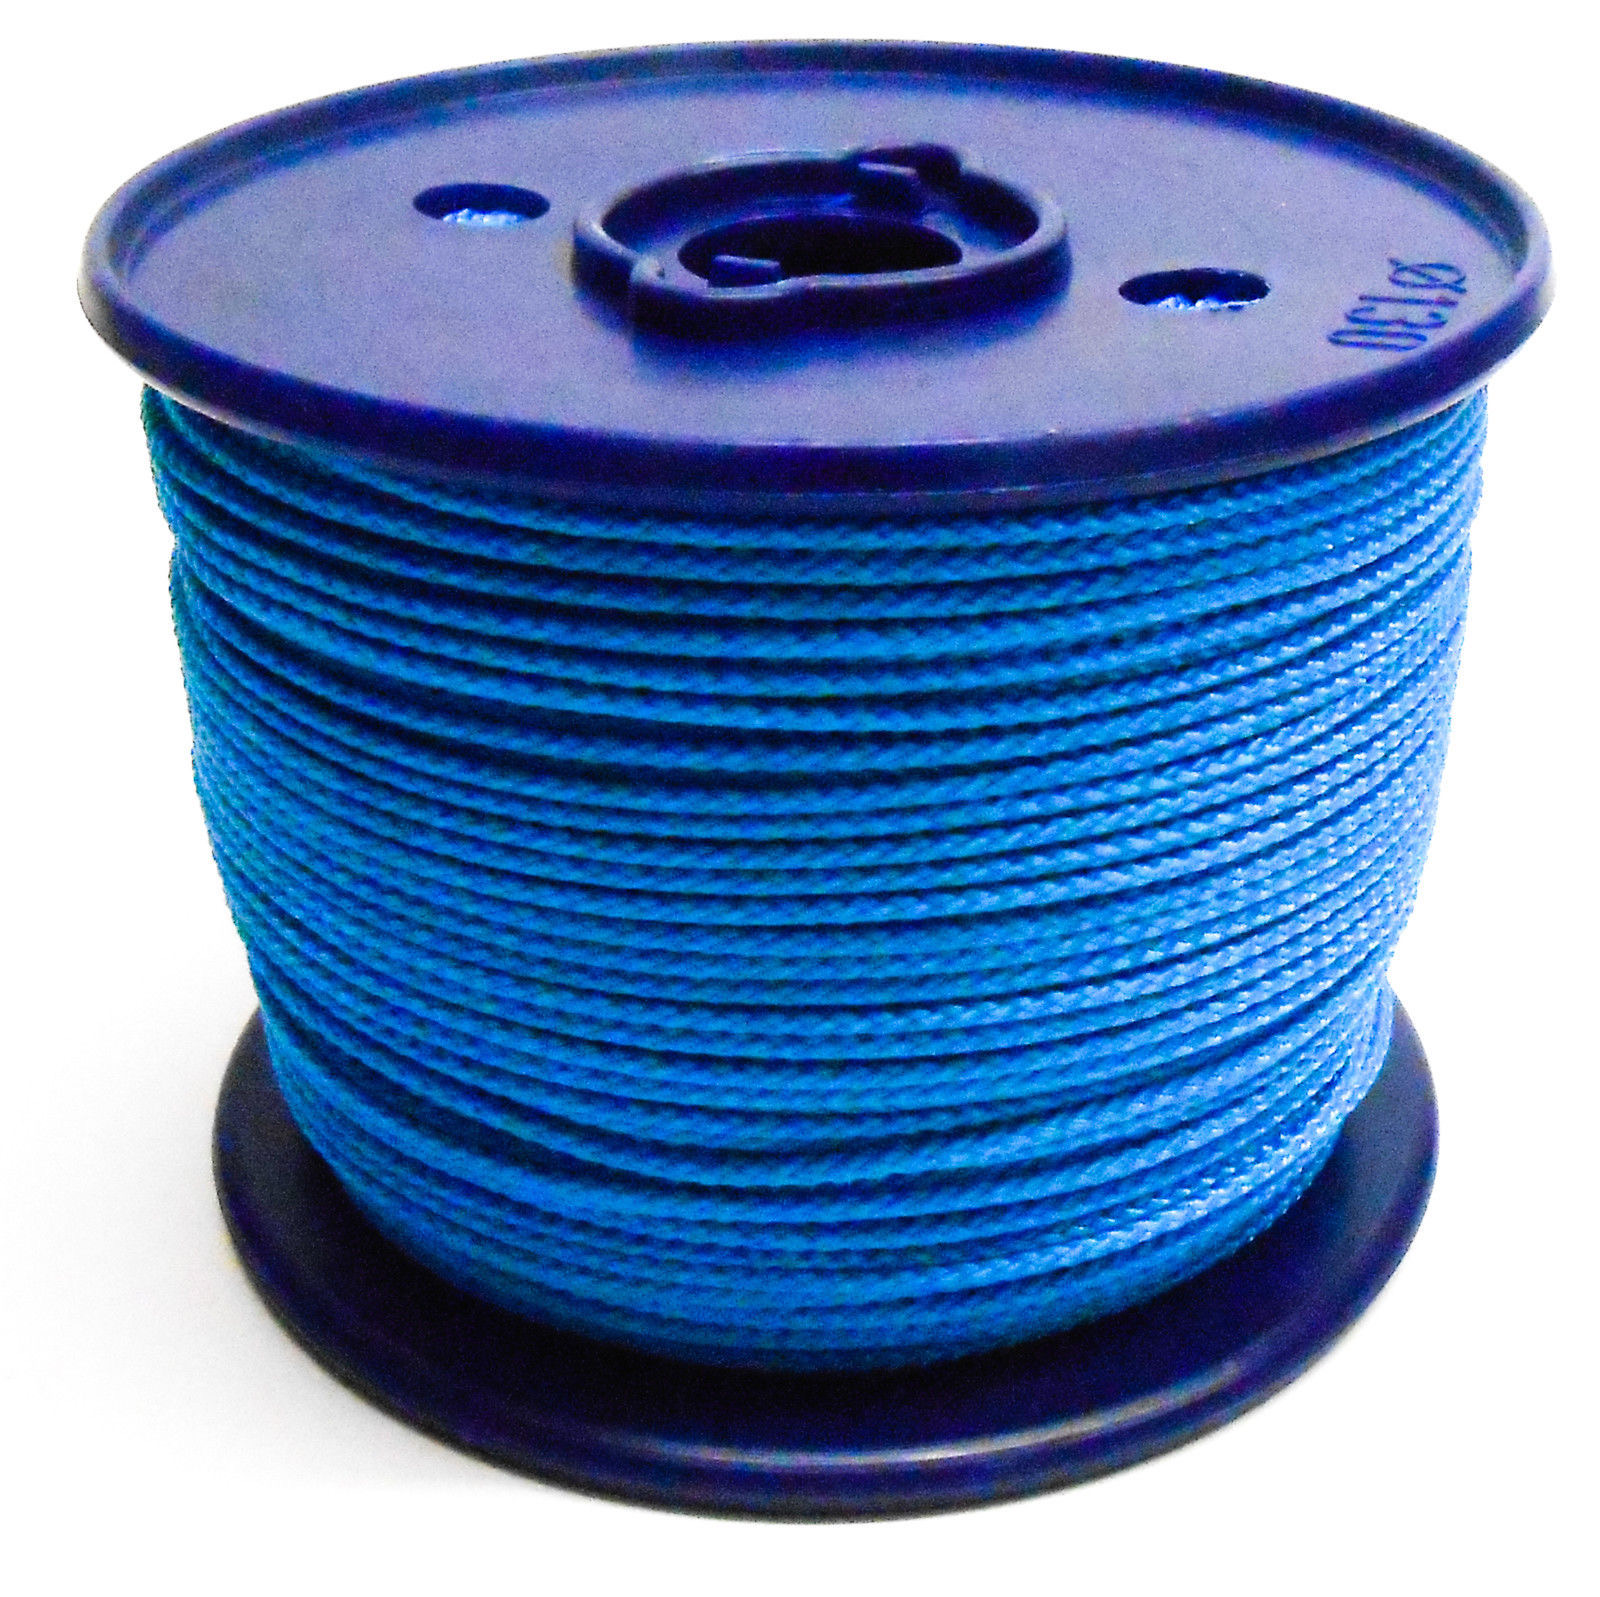 PPM gekleurd koord blauw 1,5mm 10meter